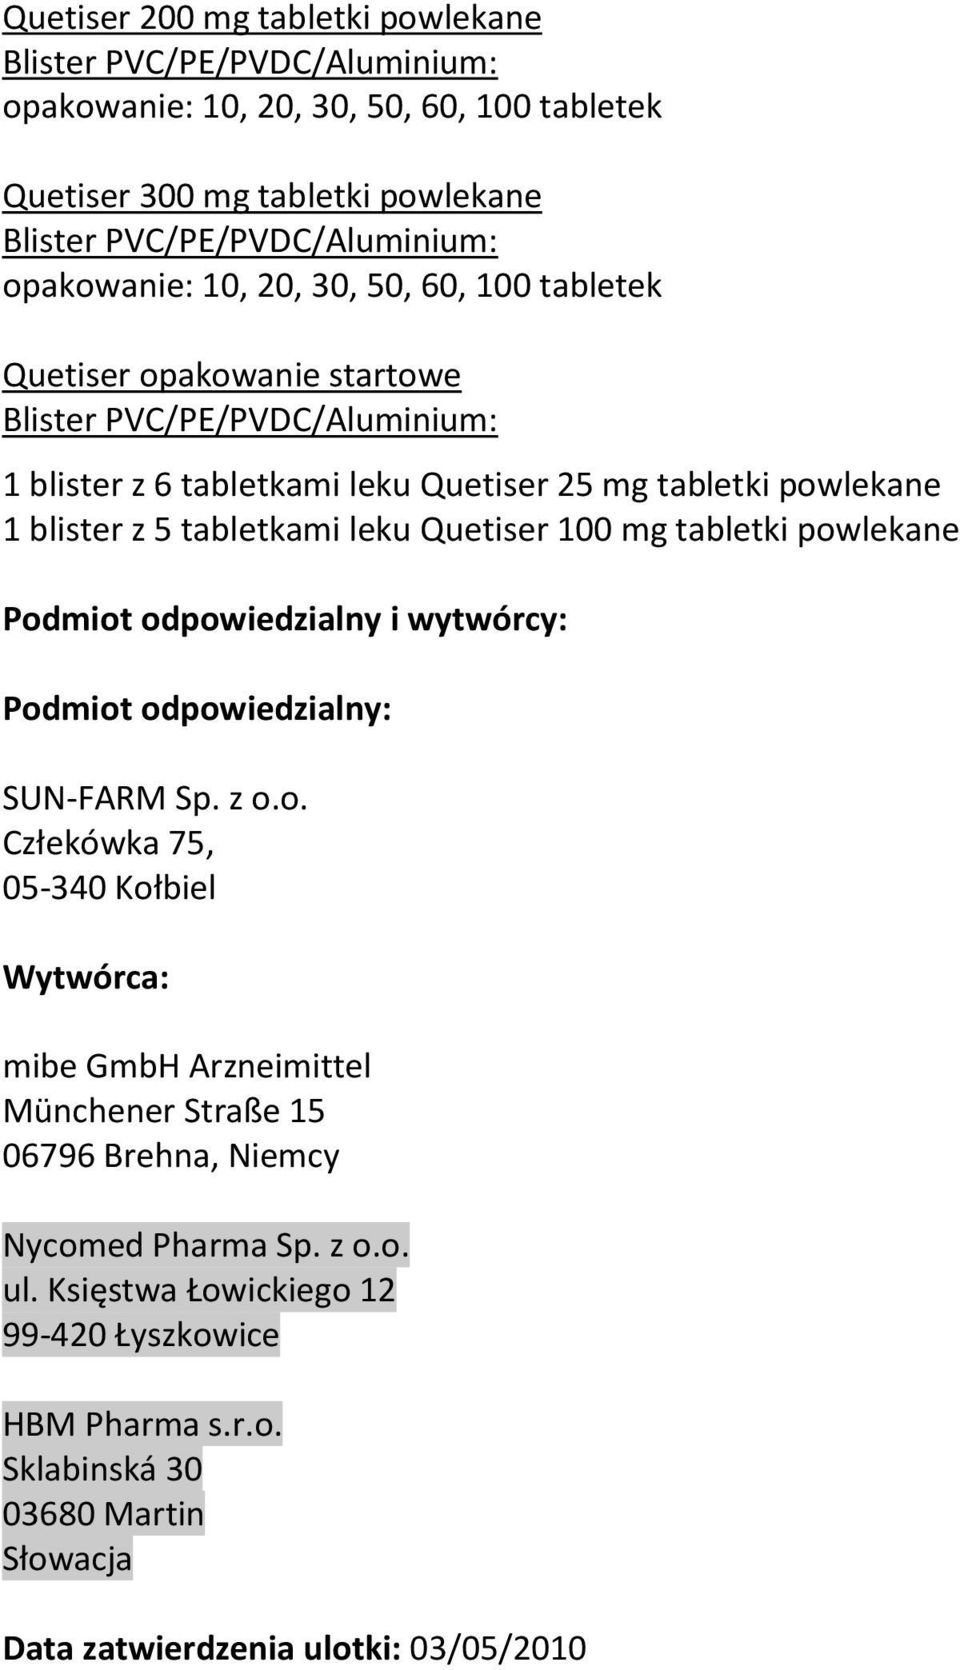 odpowiedzialny i wytwórcy: Podmiot odpowiedzialny: SUN-FARM Sp. z o.o. Człekówka 75, 05-340 Kołbiel Wytwórca: mibe GmbH Arzneimittel Münchener Straße 15 06796 Brehna, Niemcy Nycomed Pharma Sp.